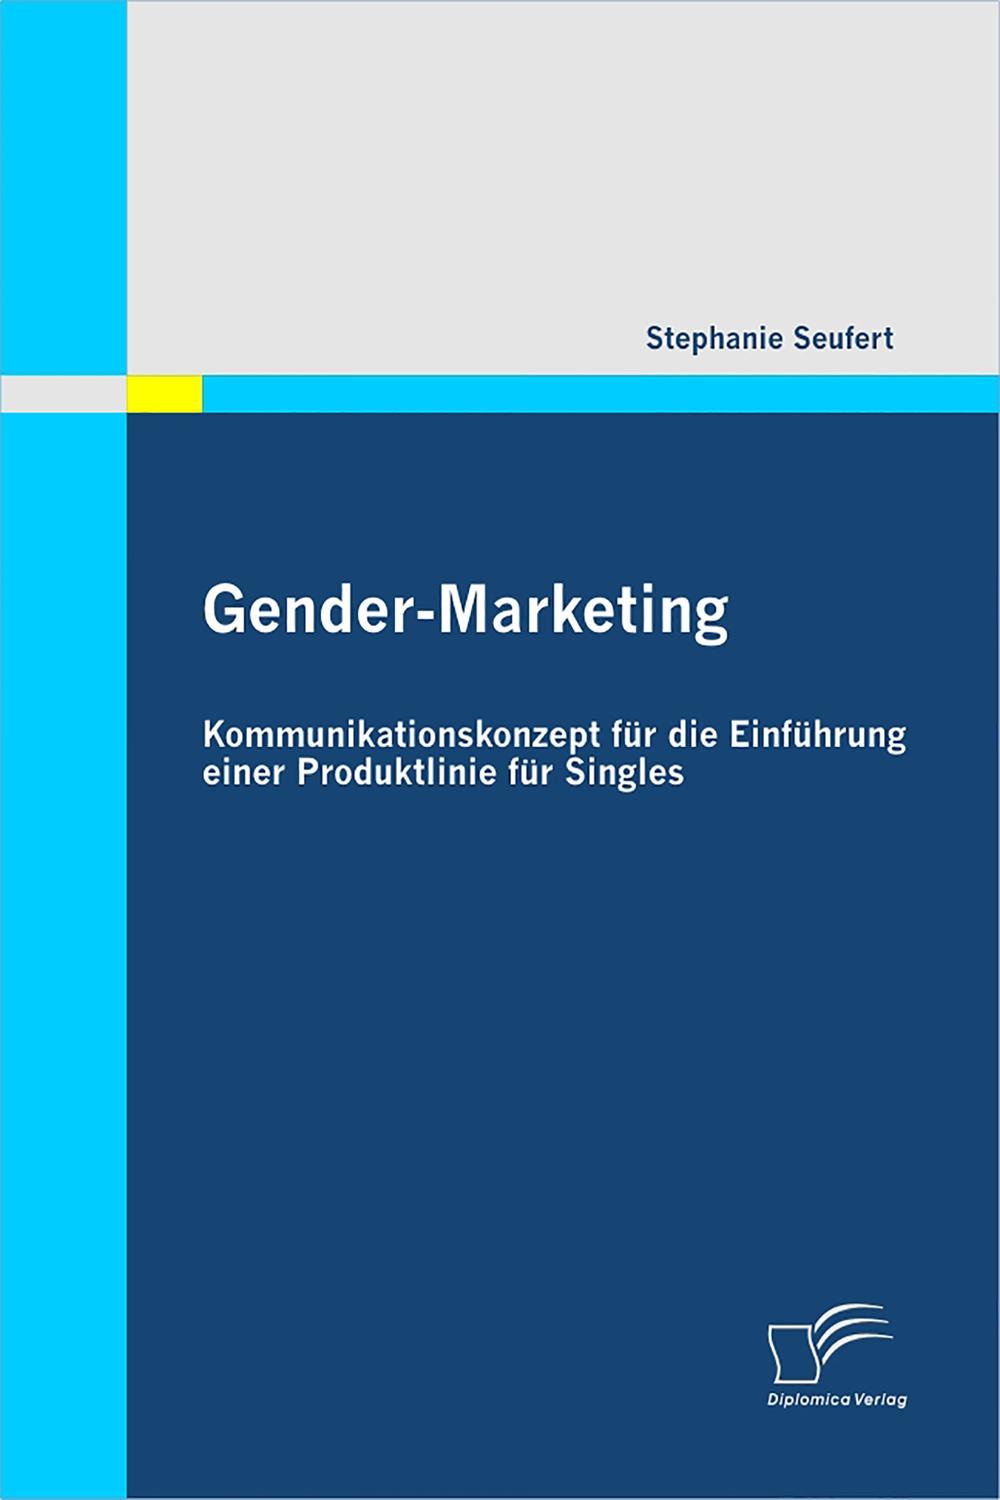 Gender-Marketing: Kommunikationskonzept für die Einführung einer Produktlinie für Singles - Stephanie Seufert